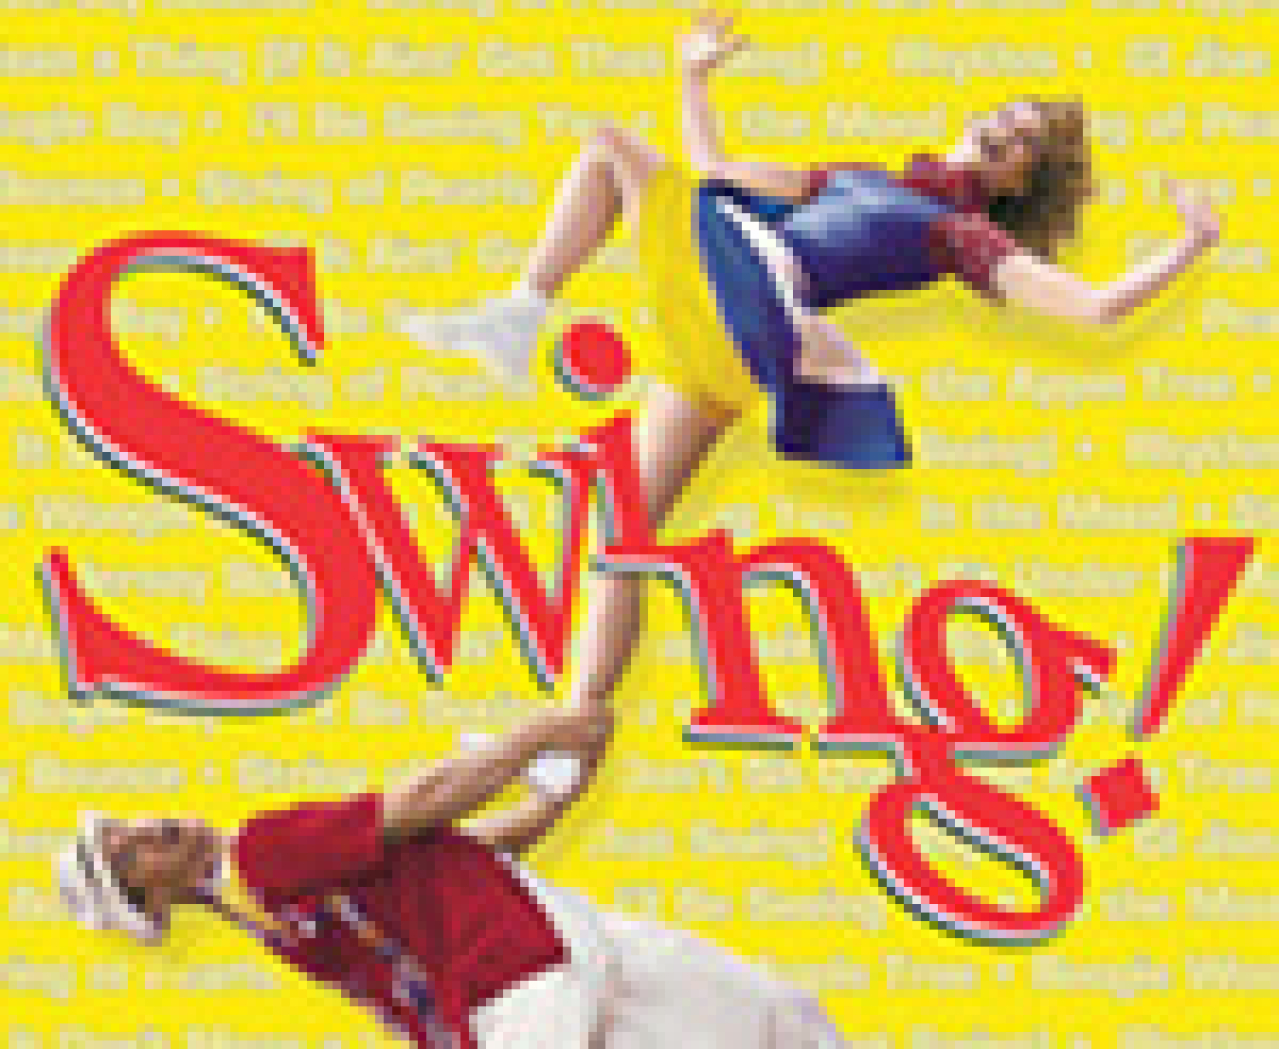 swing logo 26806